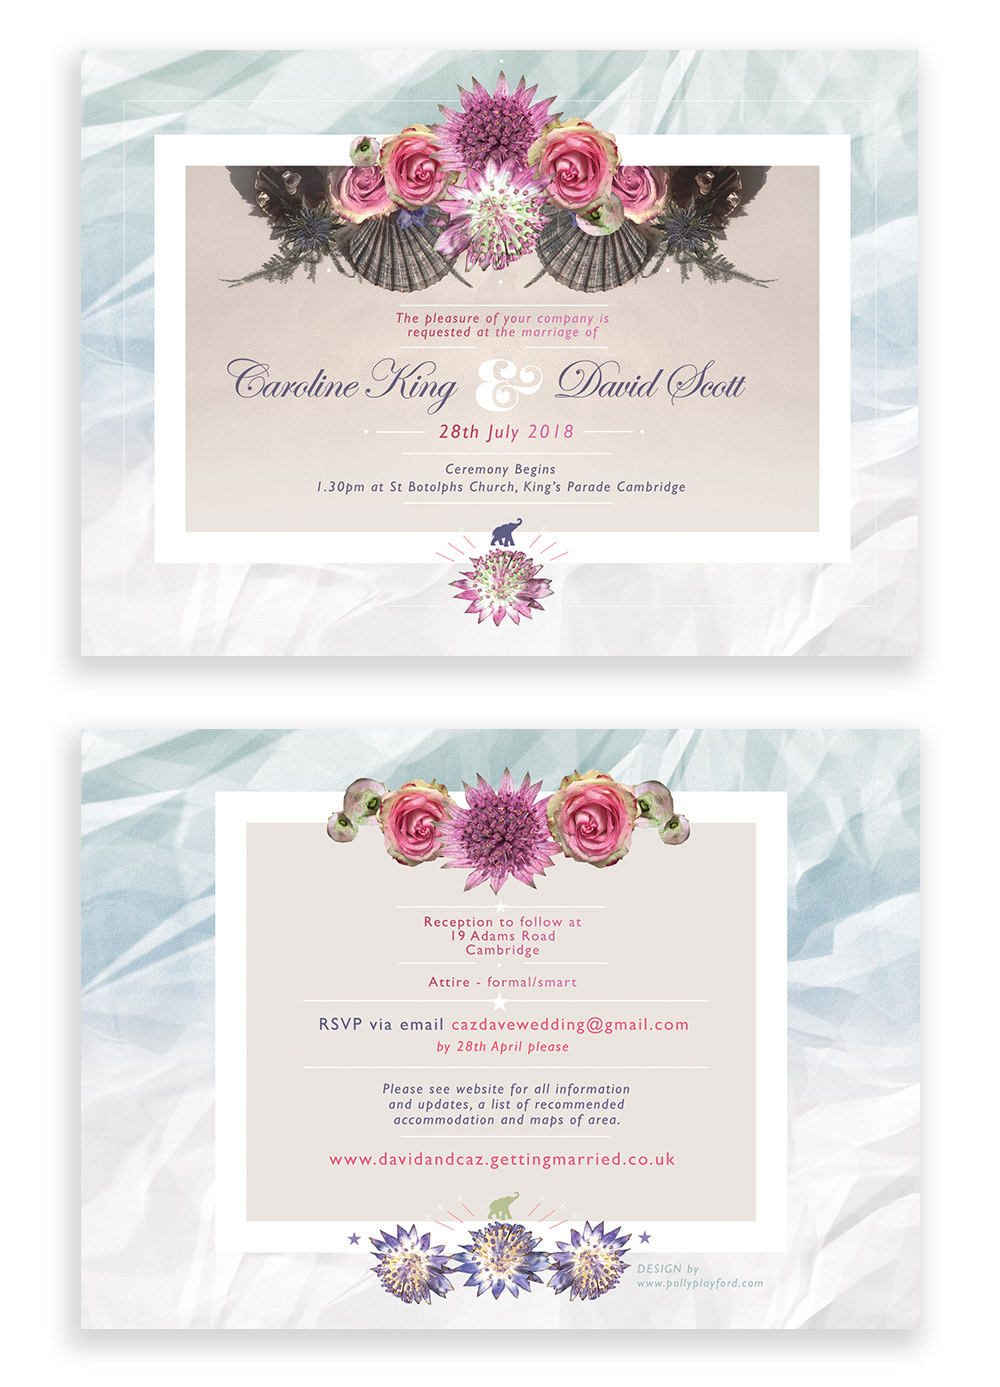 wedding invite design freelance graphic designer Kingston